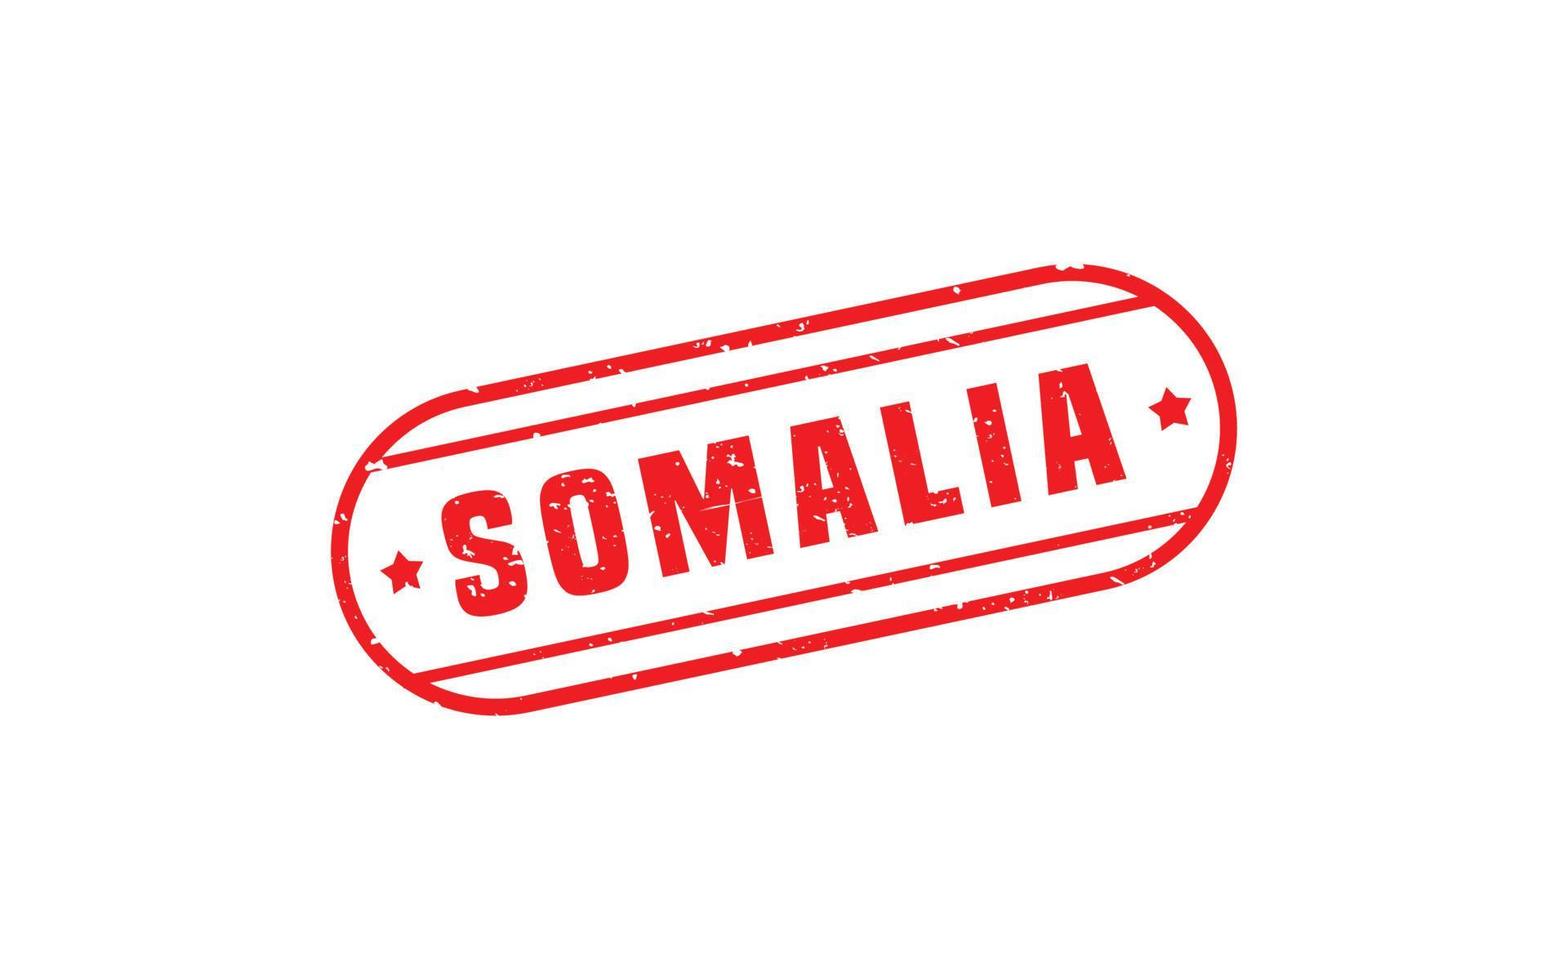 Somalia sello caucho con grunge estilo en blanco antecedentes vector